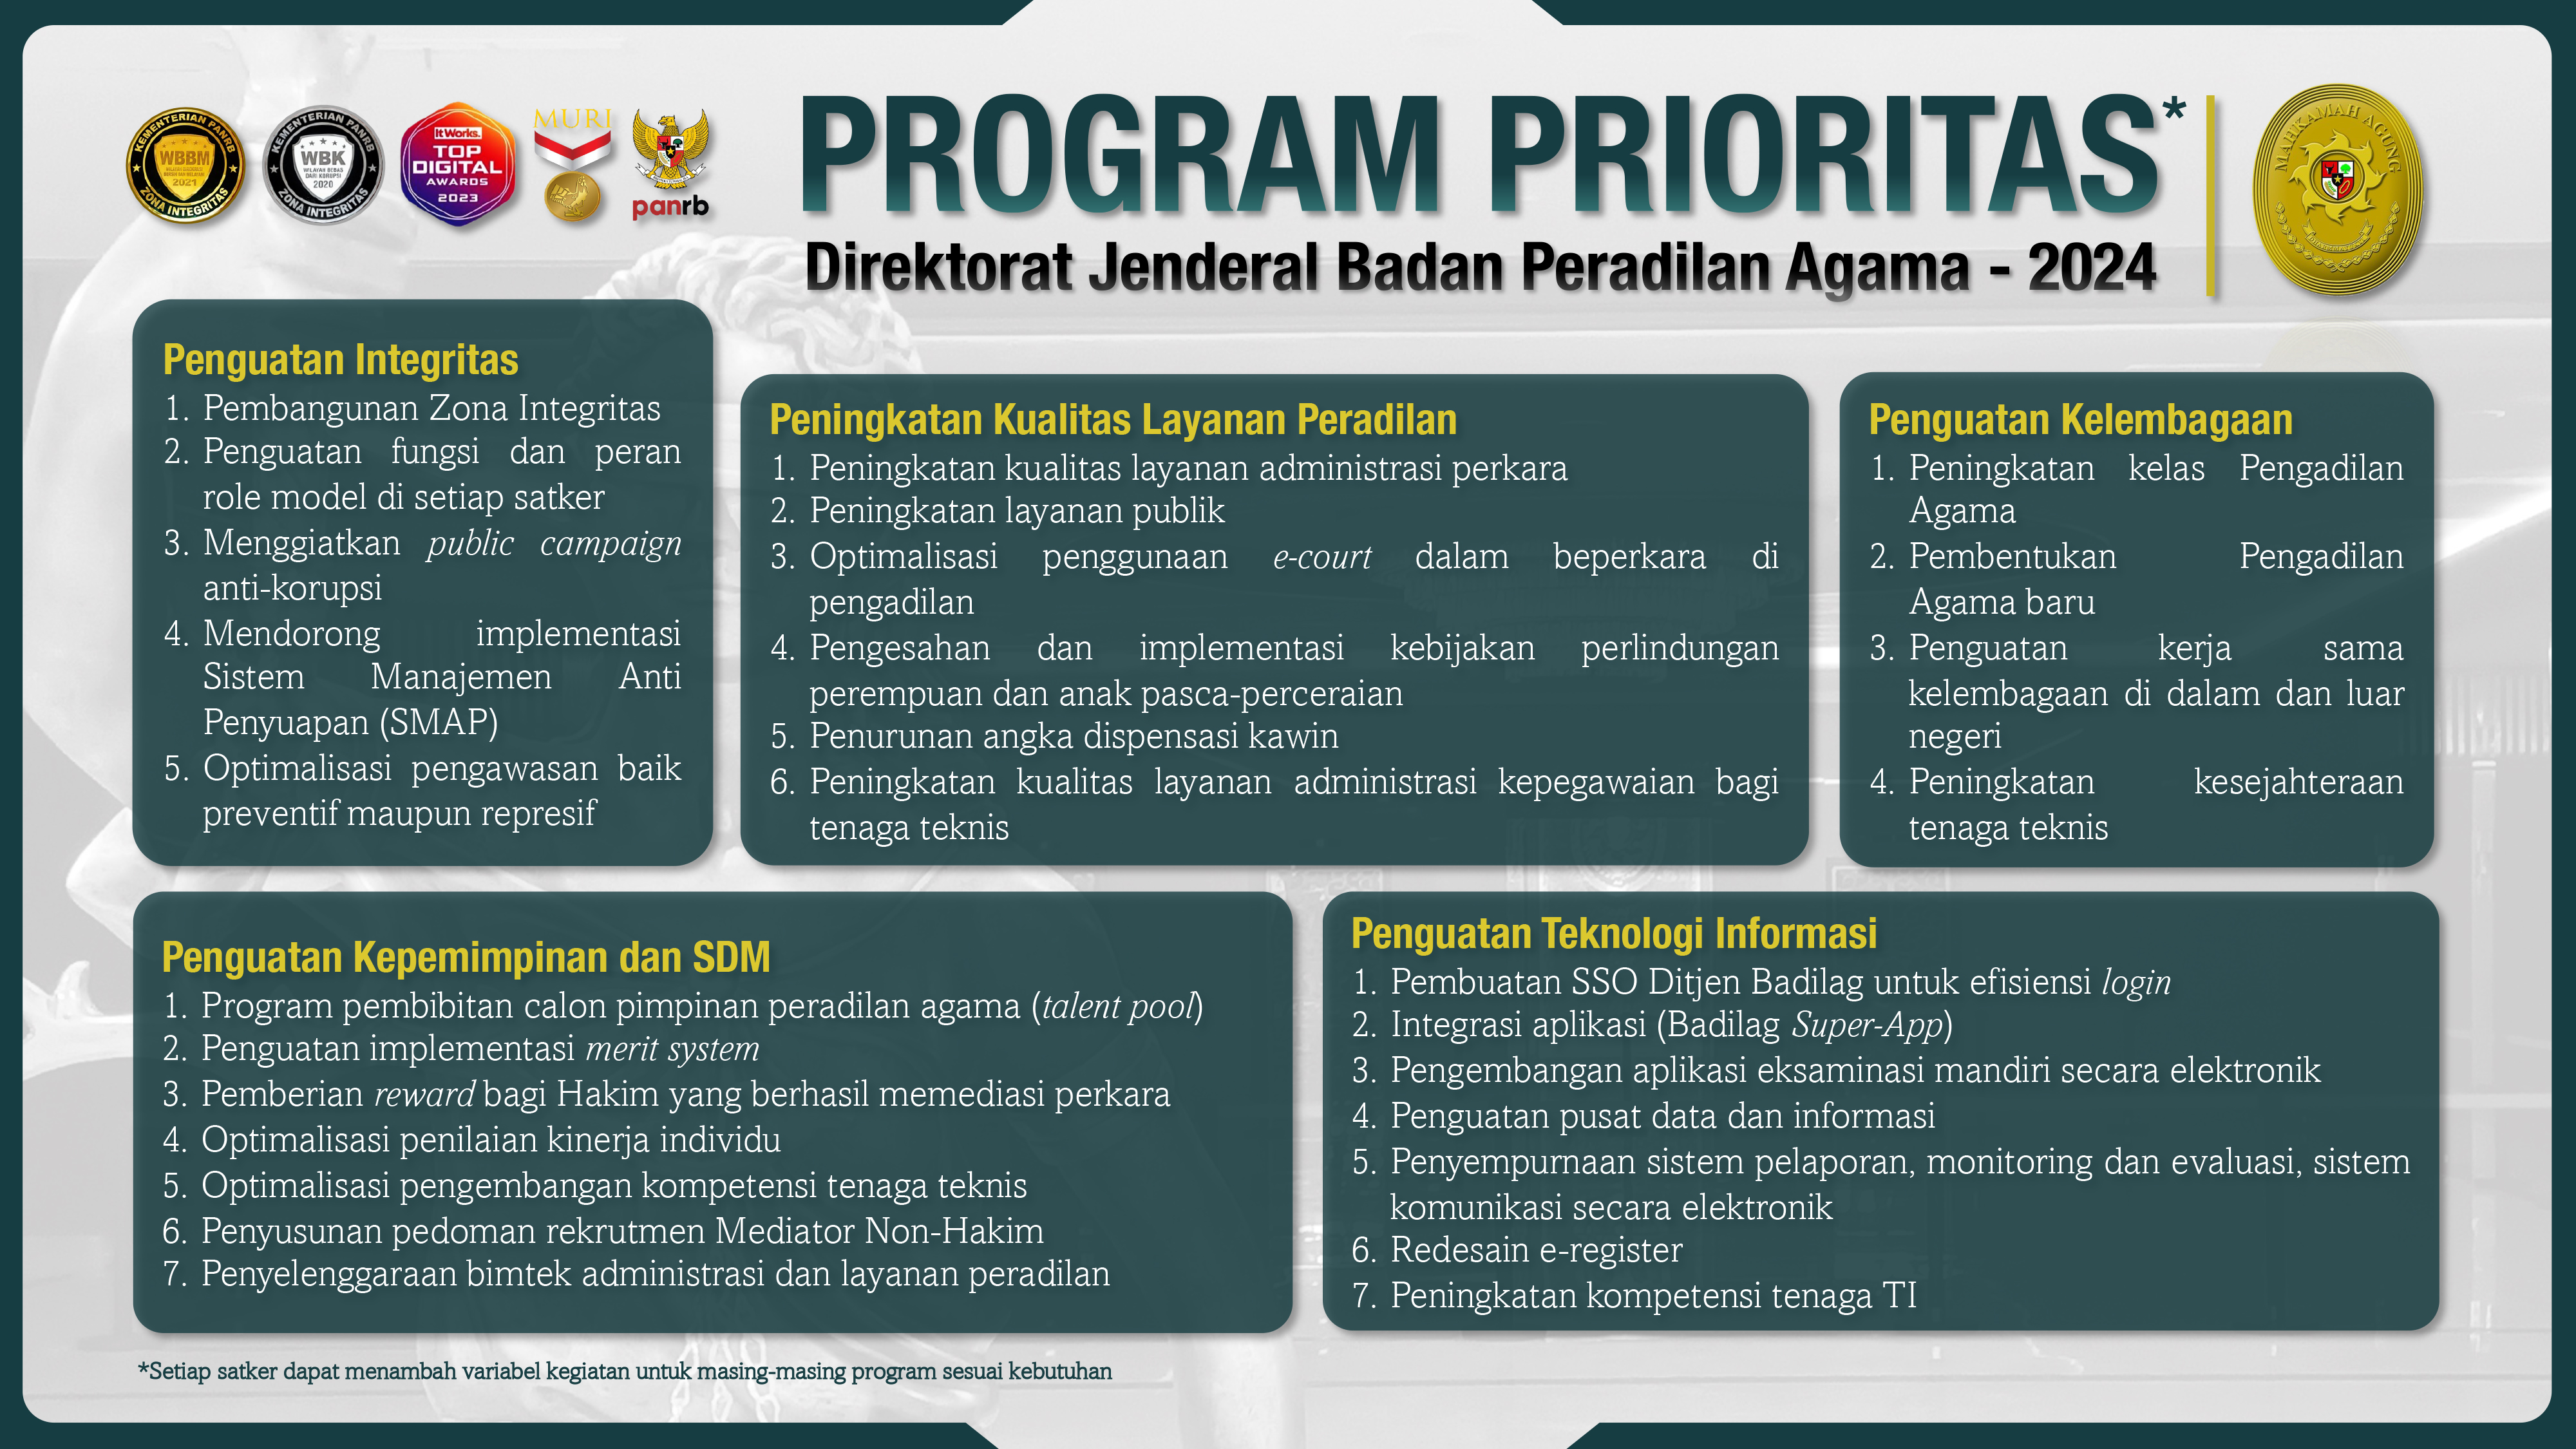 Program Prioritas Ditjen Badilag